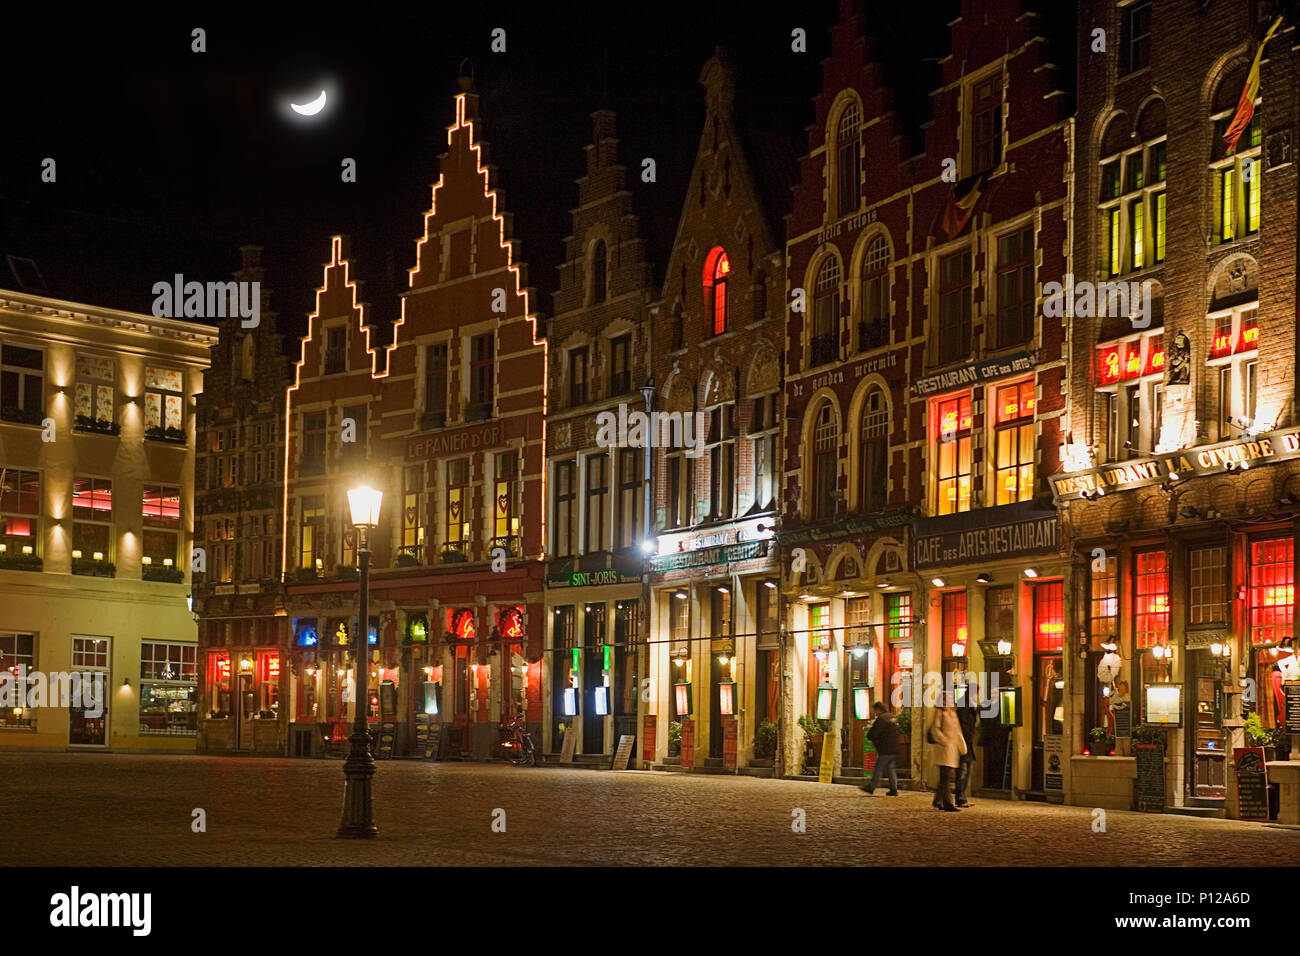 Le côté nord de la place du marché de nuit, éclairé brillamment avec cafés et bars, Brugge, Belgique Banque D'Images